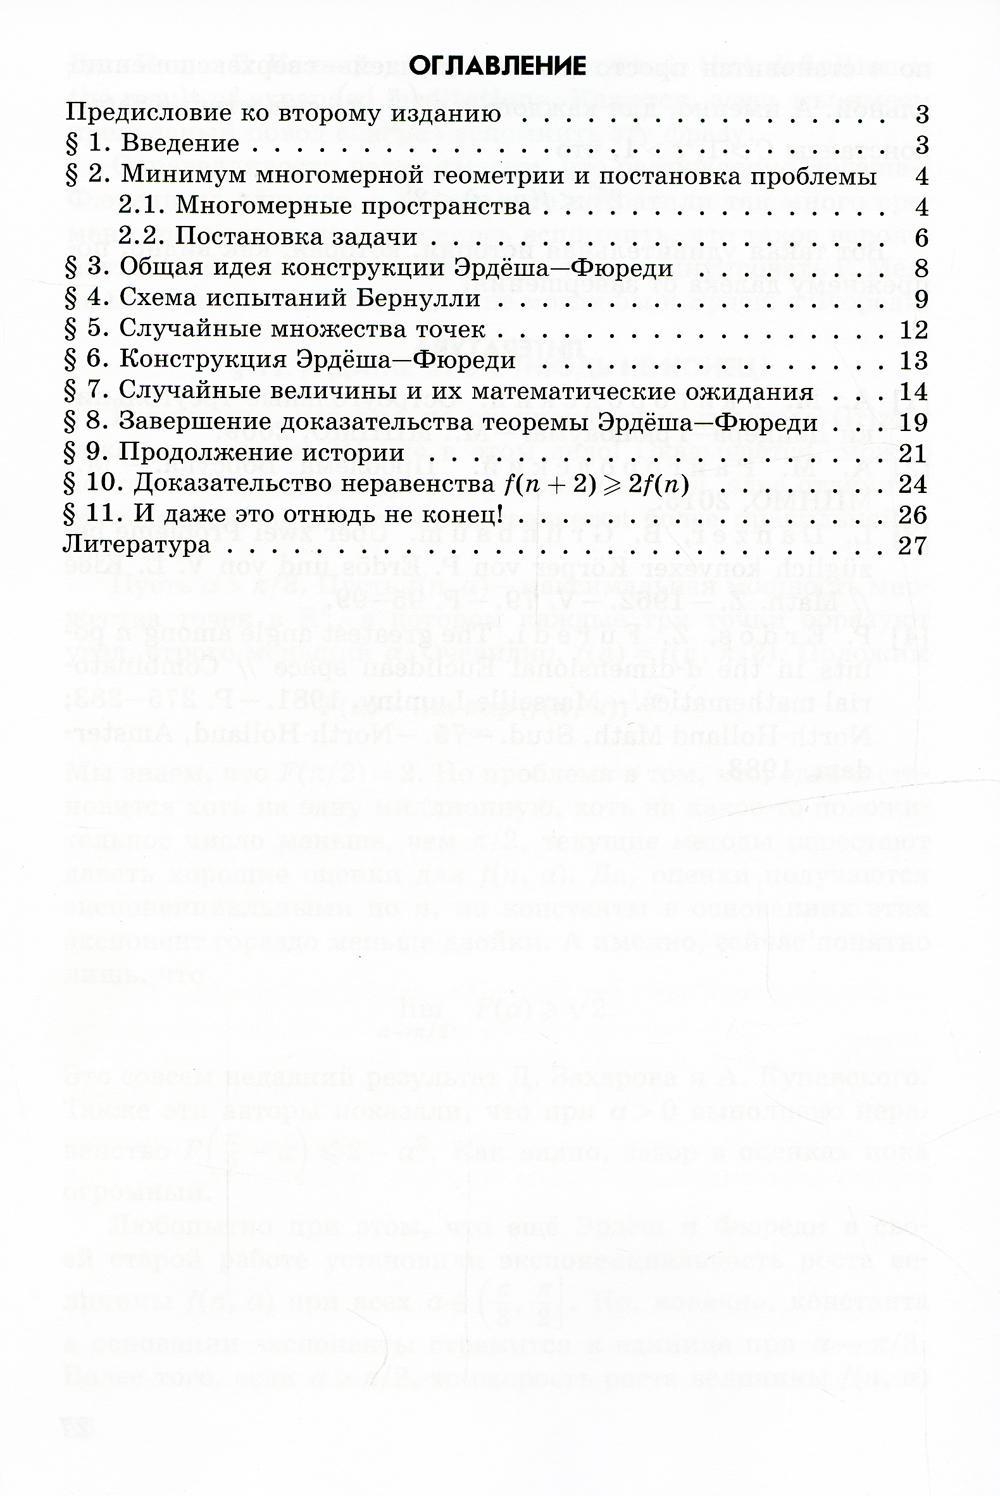 Остроугольные треугольники Данцера-Грюнбаума. 2-е изд., испр.и доп